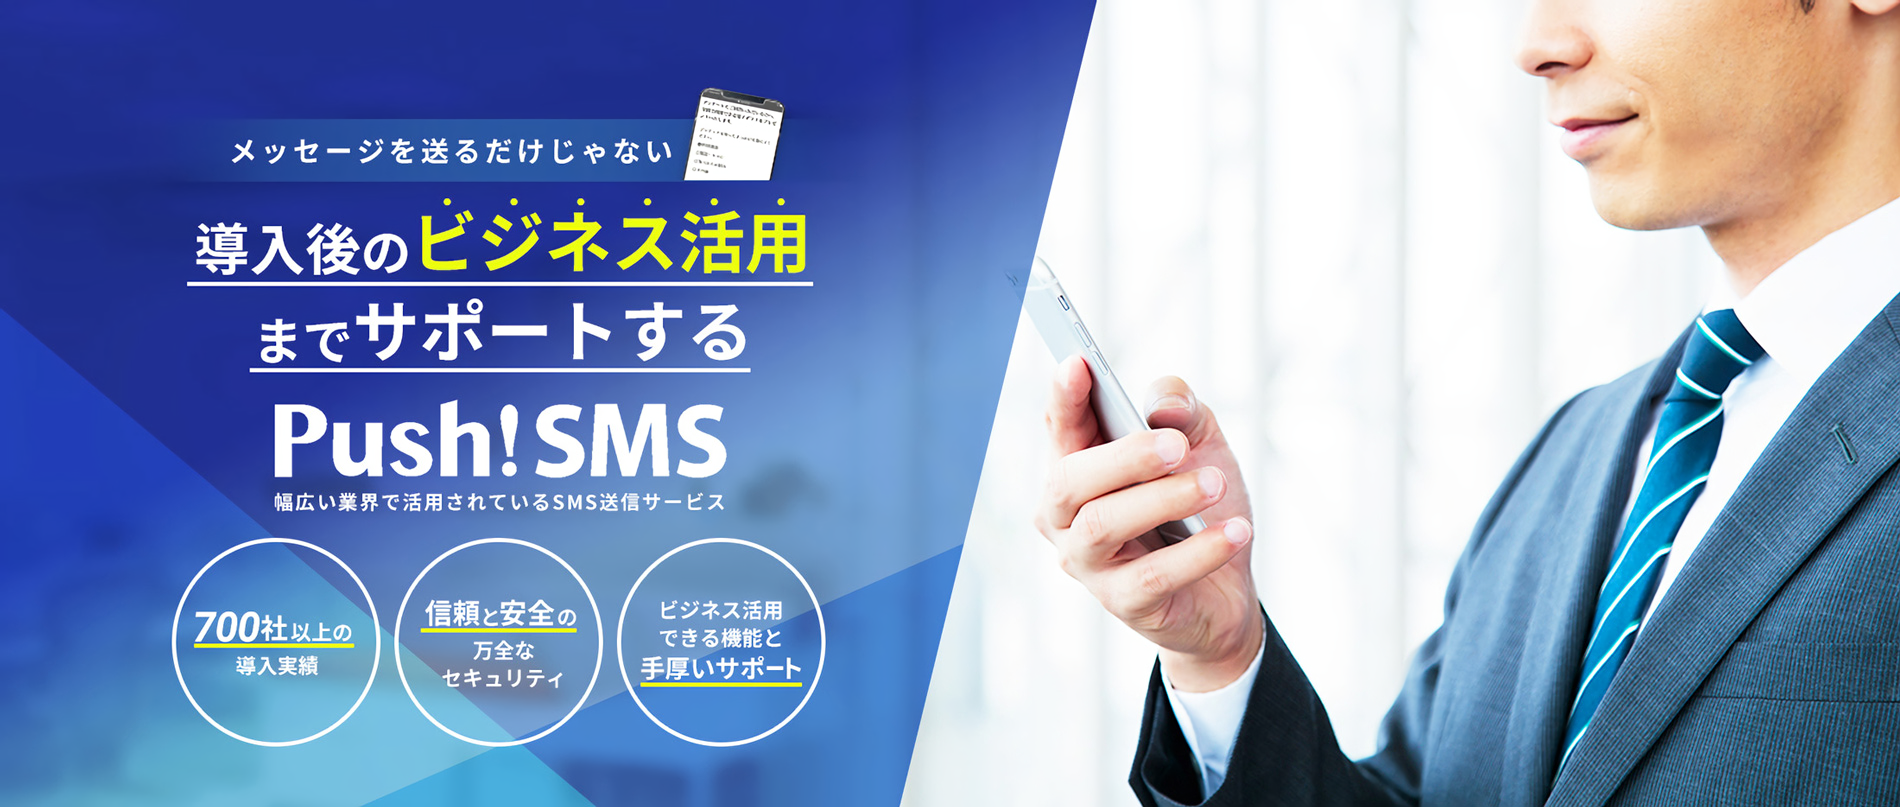 メッセージを送るだけじゃない 導入後のビジネス活用までサポートするPush!SMS 幅広い業界で活用されているSMS送信サービス